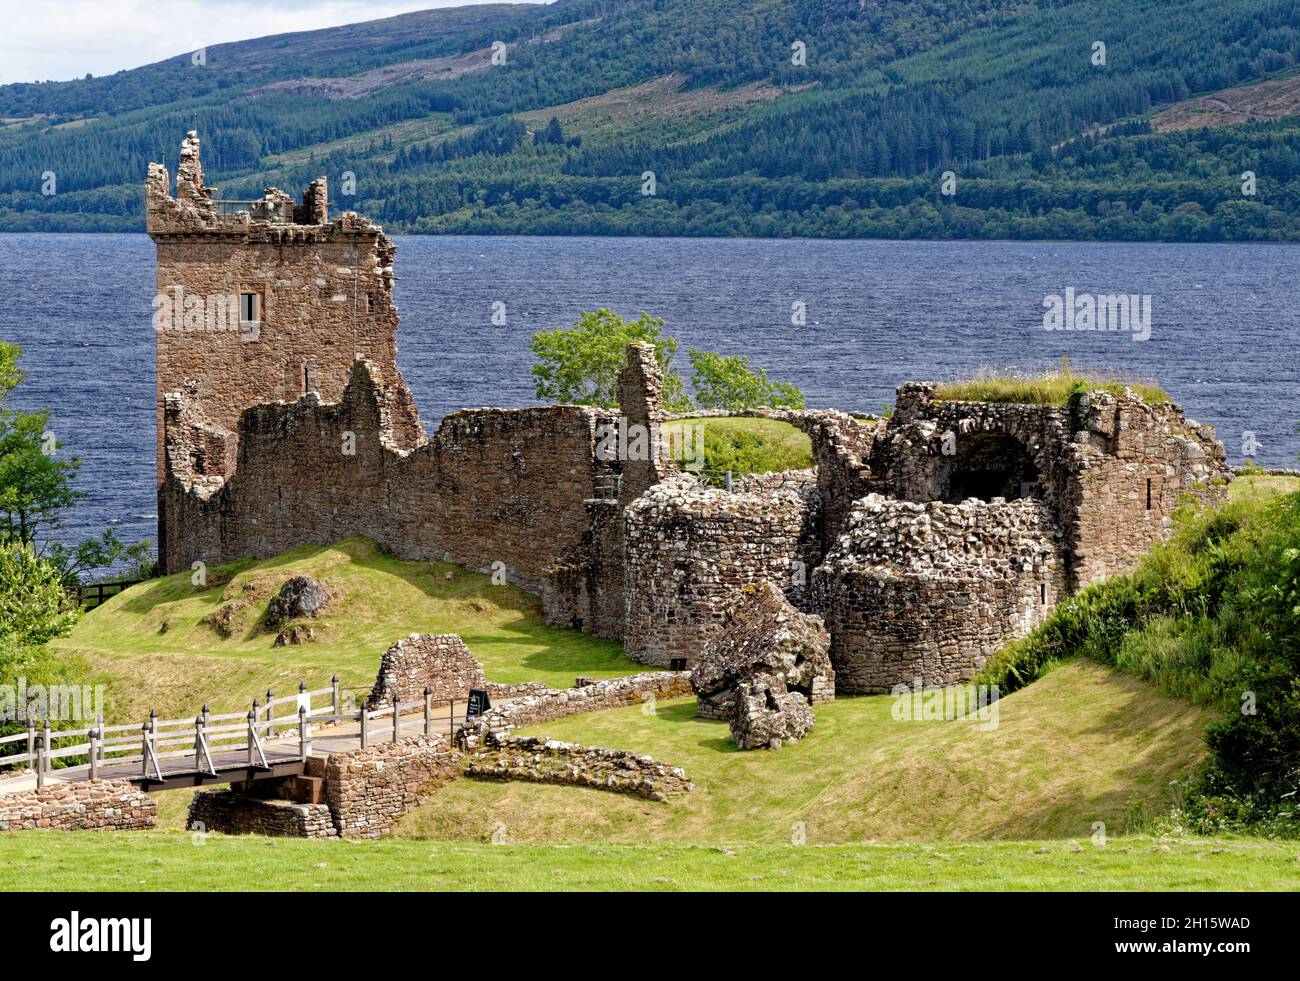 Attraction touristique écossaise - ruines du château d'Urquhart sur la rive ouest du Loch Ness (site de nombreuses observations de Nessie) - Drumnadrochit, Écosse Banque D'Images